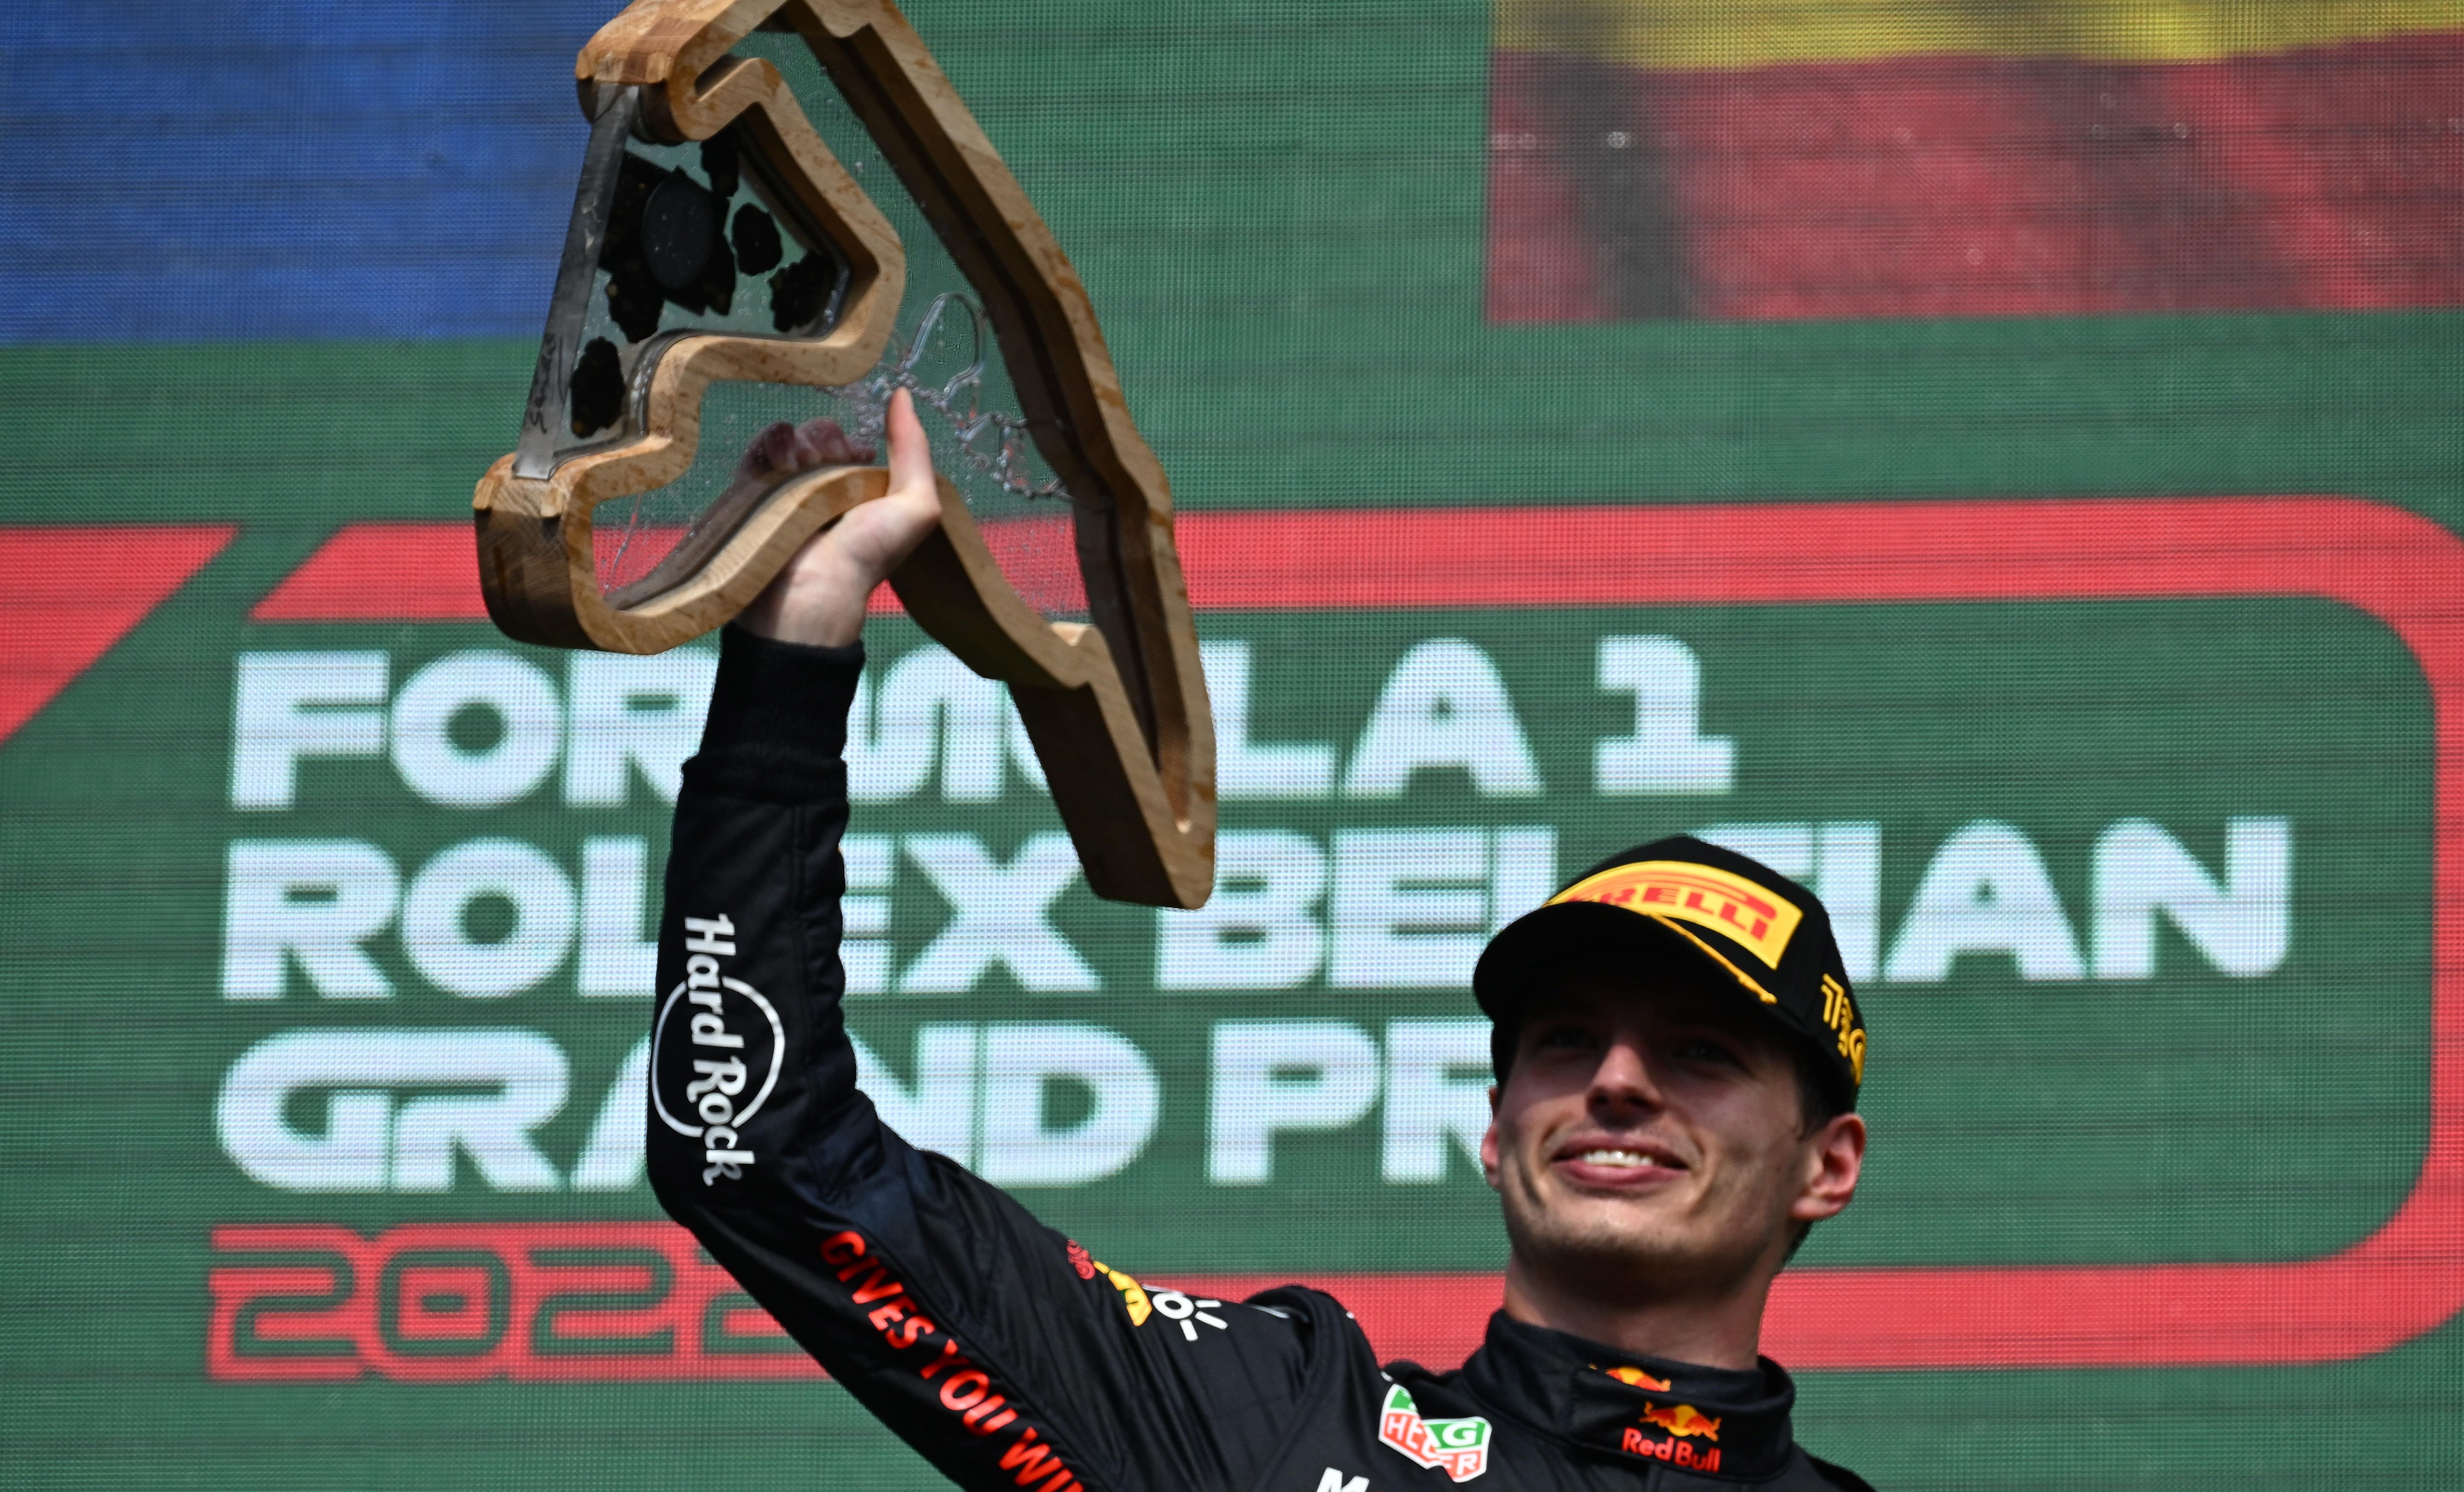 Remontada de campeón de Max Verstappen en el GP de Bélgica con insulto de Alonso a Hamilton incluído